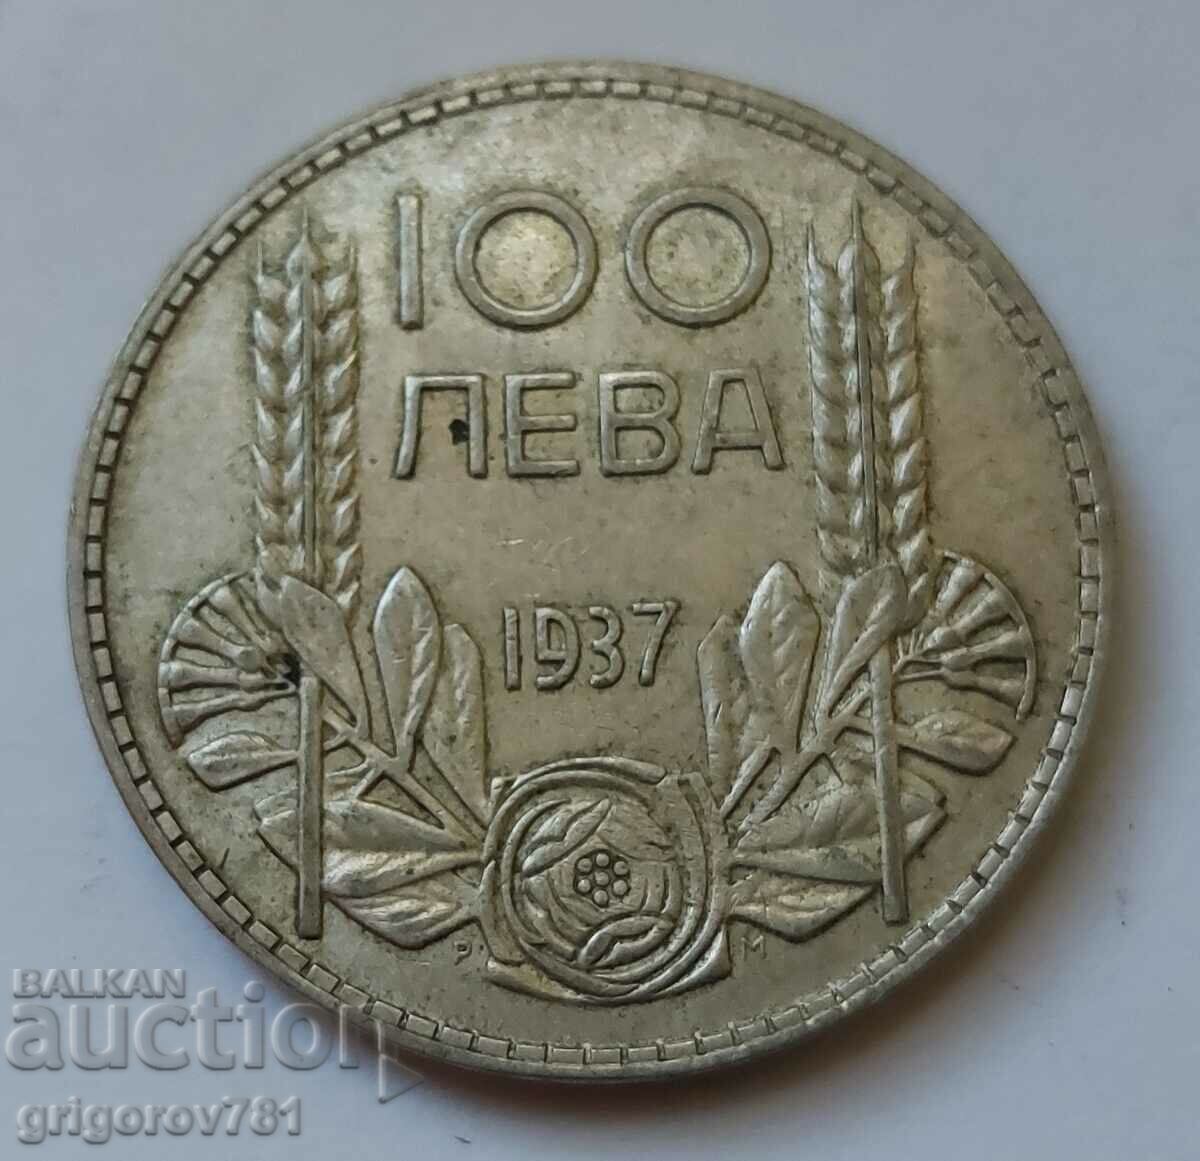 Ασήμι 100 λέβα Βουλγαρία 1937 - ασημένιο νόμισμα #90